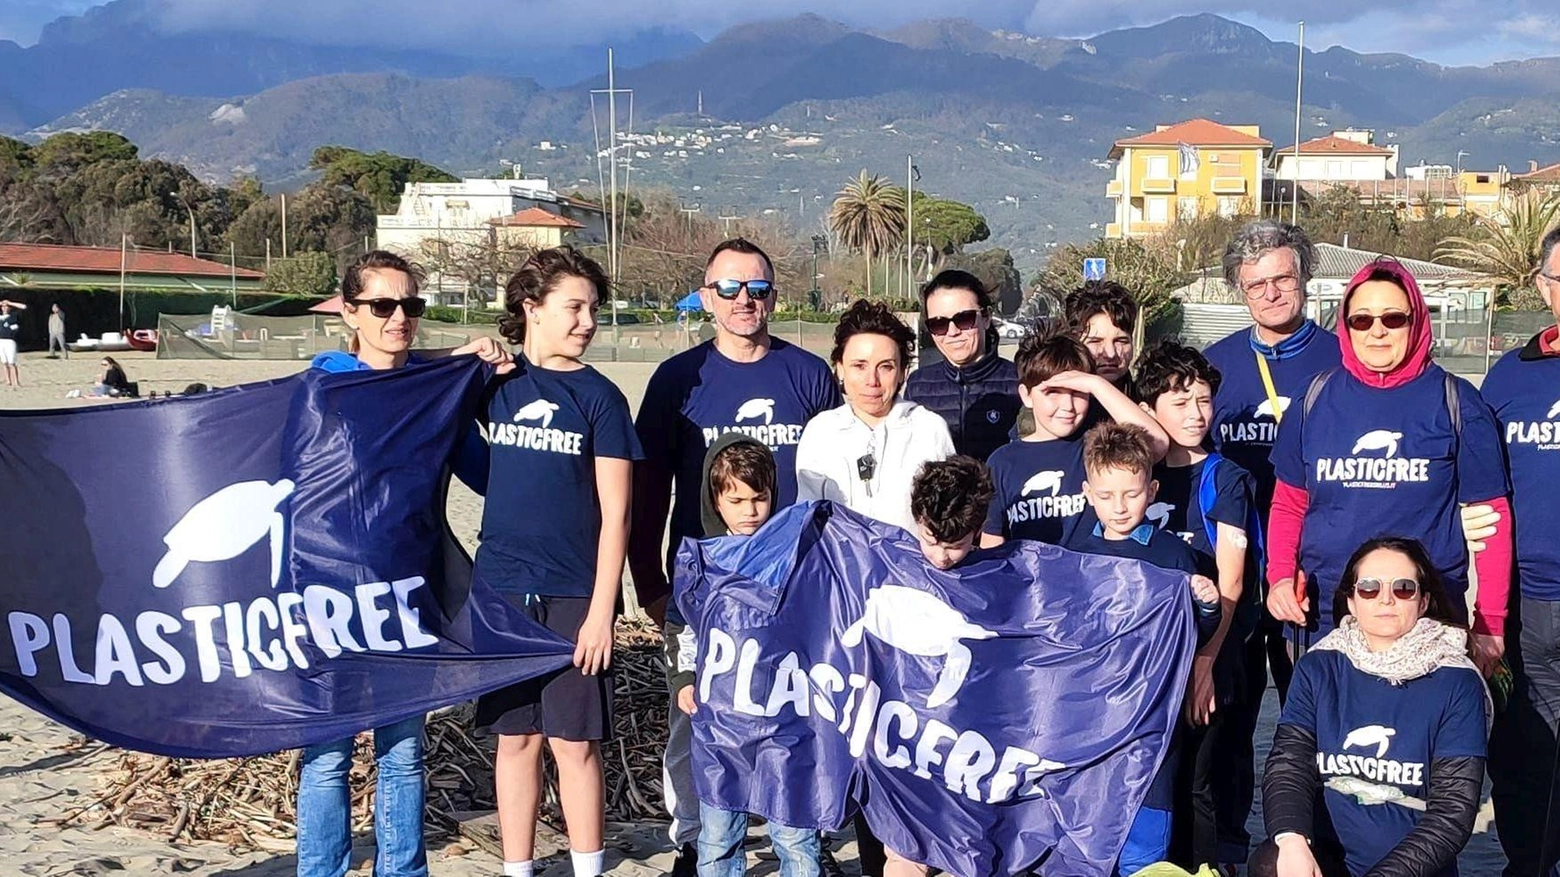 A Pietrasanta, l'associazione PlasticFree ha organizzato un "clean up" con 25 partecipanti che hanno raccolto 500 chili di rifiuti sulla spiaggia. L'assessore all'ambiente ha elogiato l'impegno dell'associazione e il prossimo evento è previsto per il 21 aprile in occasione della Giornata Mondiale della Terra.